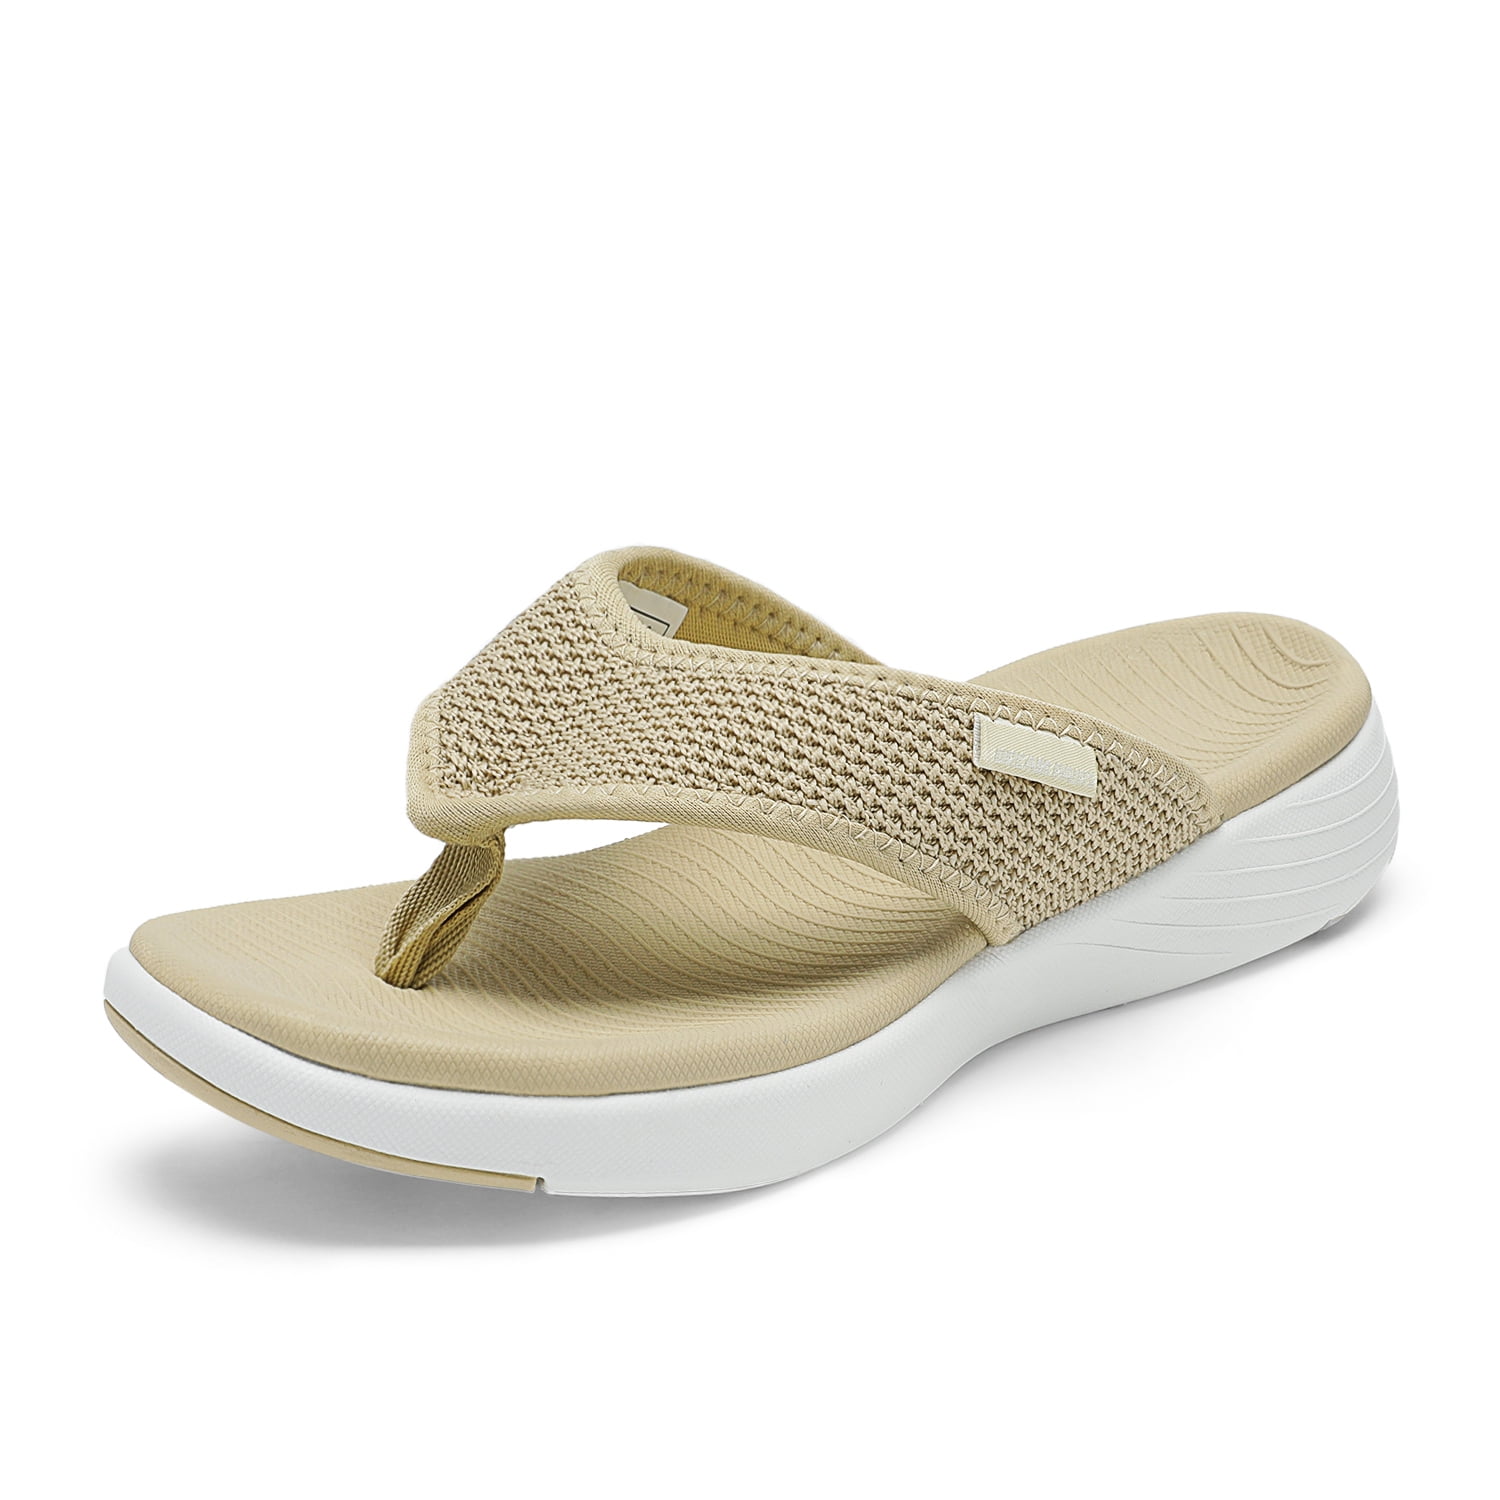 Dream Women's Arch Support Soft Cushion Flip Flops Thong Sandals Slippers BREEZE-2 BEIGE Size 9 - Walmart.com